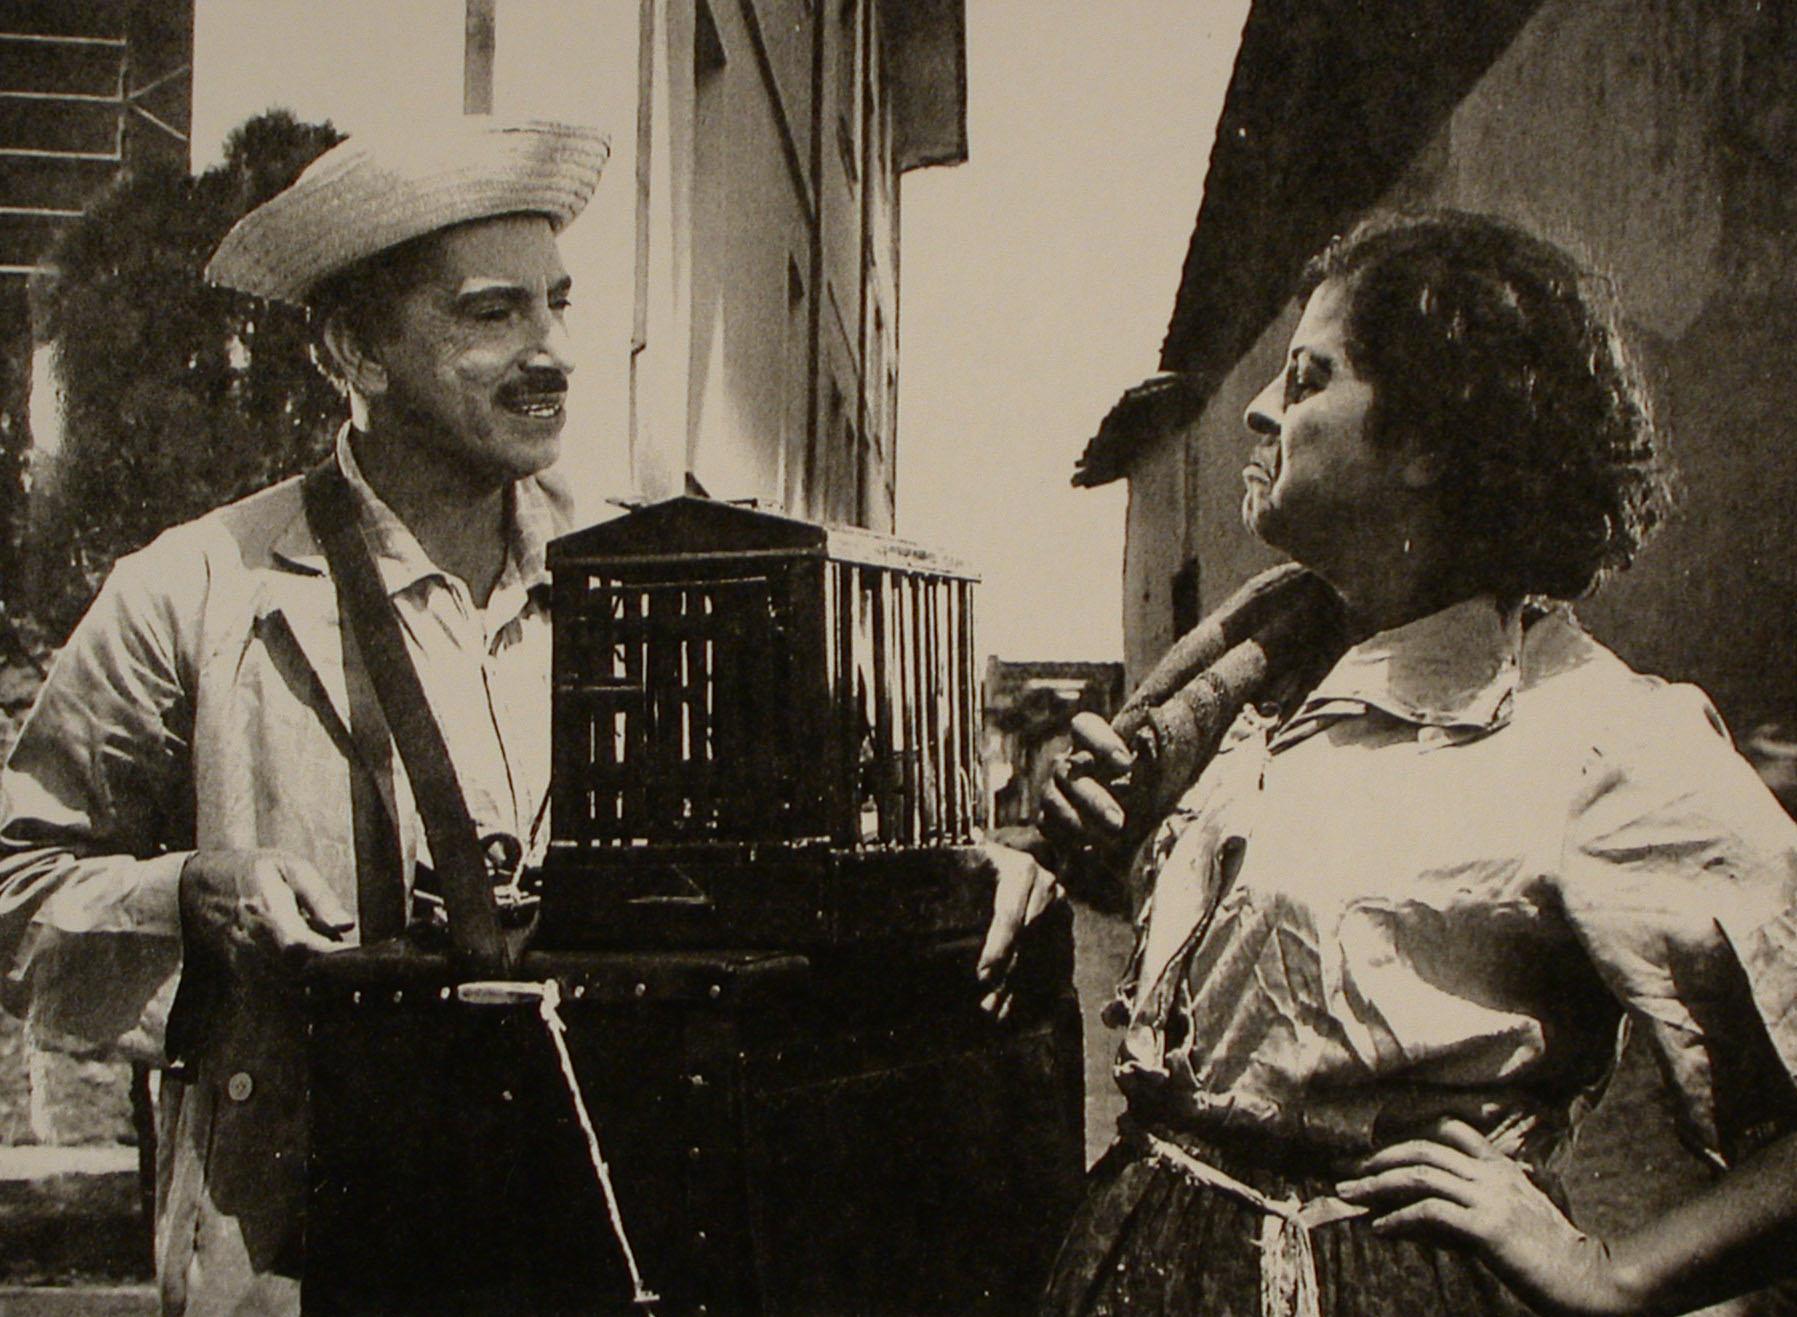 Zé do Periquito (1960)